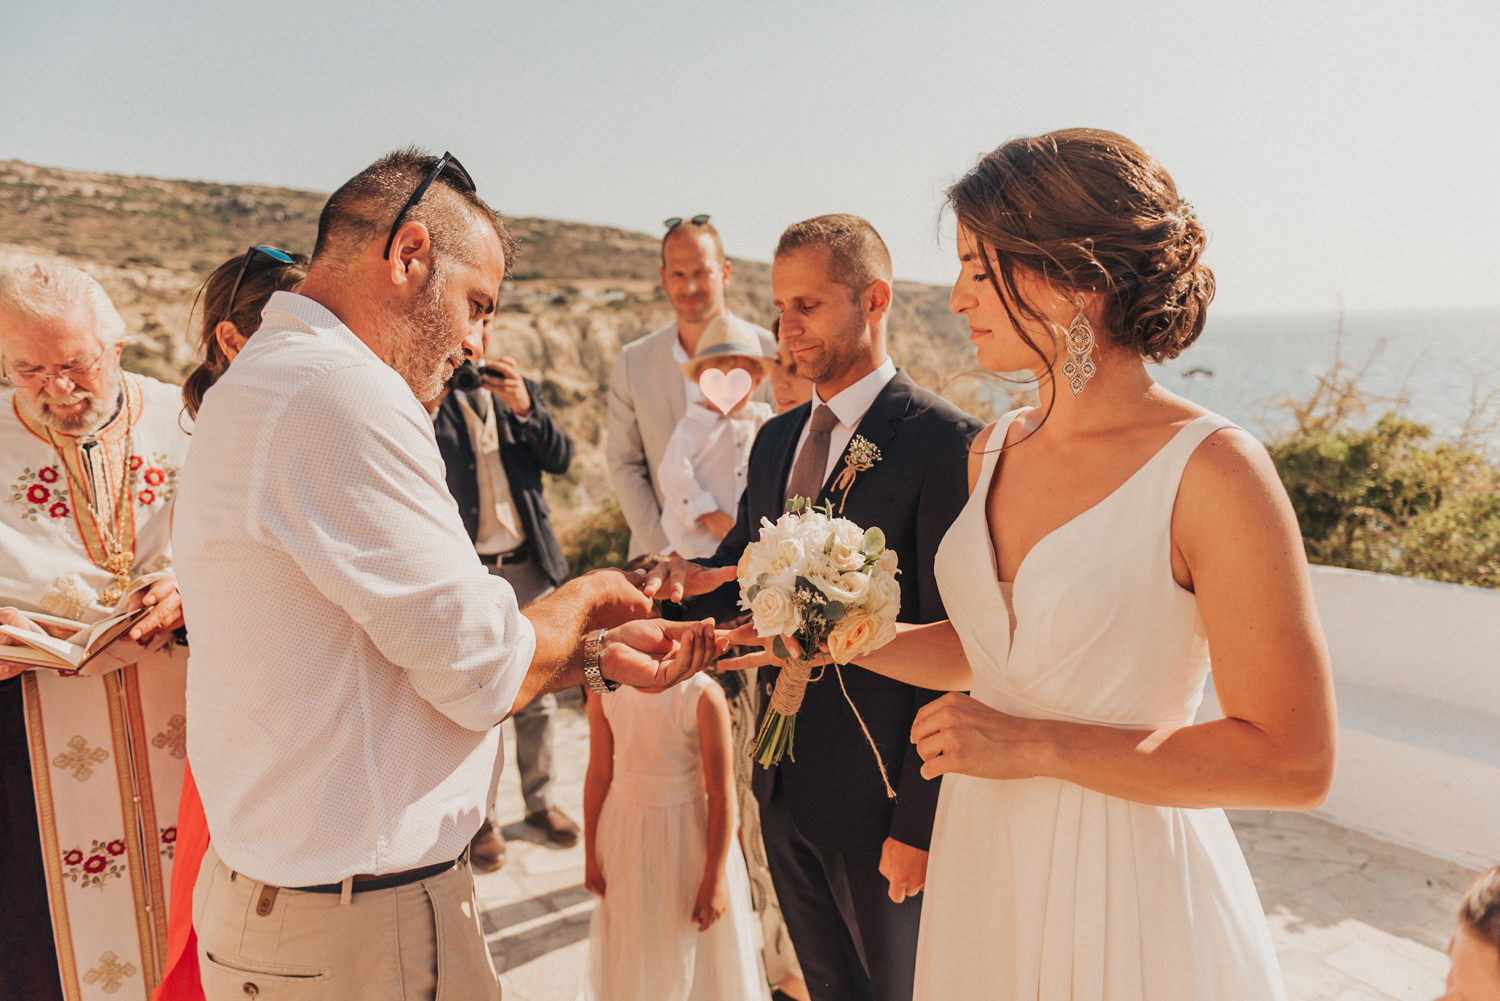 Hochzeitsfotograf-Kreta-Auslandshochzeit-Destination-wedding-crete-greece-wedding photographer-36 Kopie